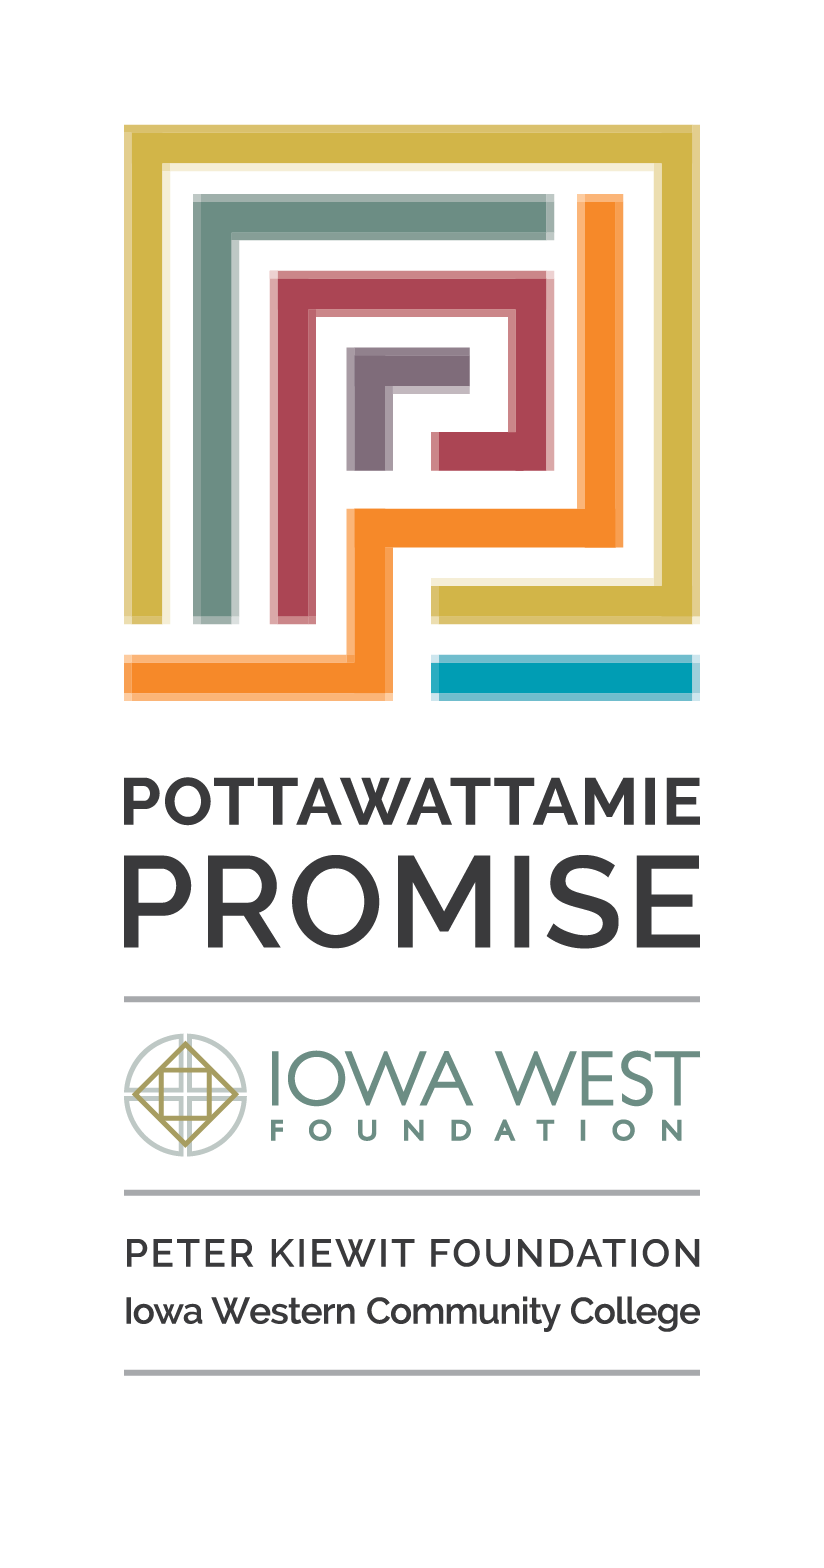 Pottawattamie Promise Iowa West Foundation